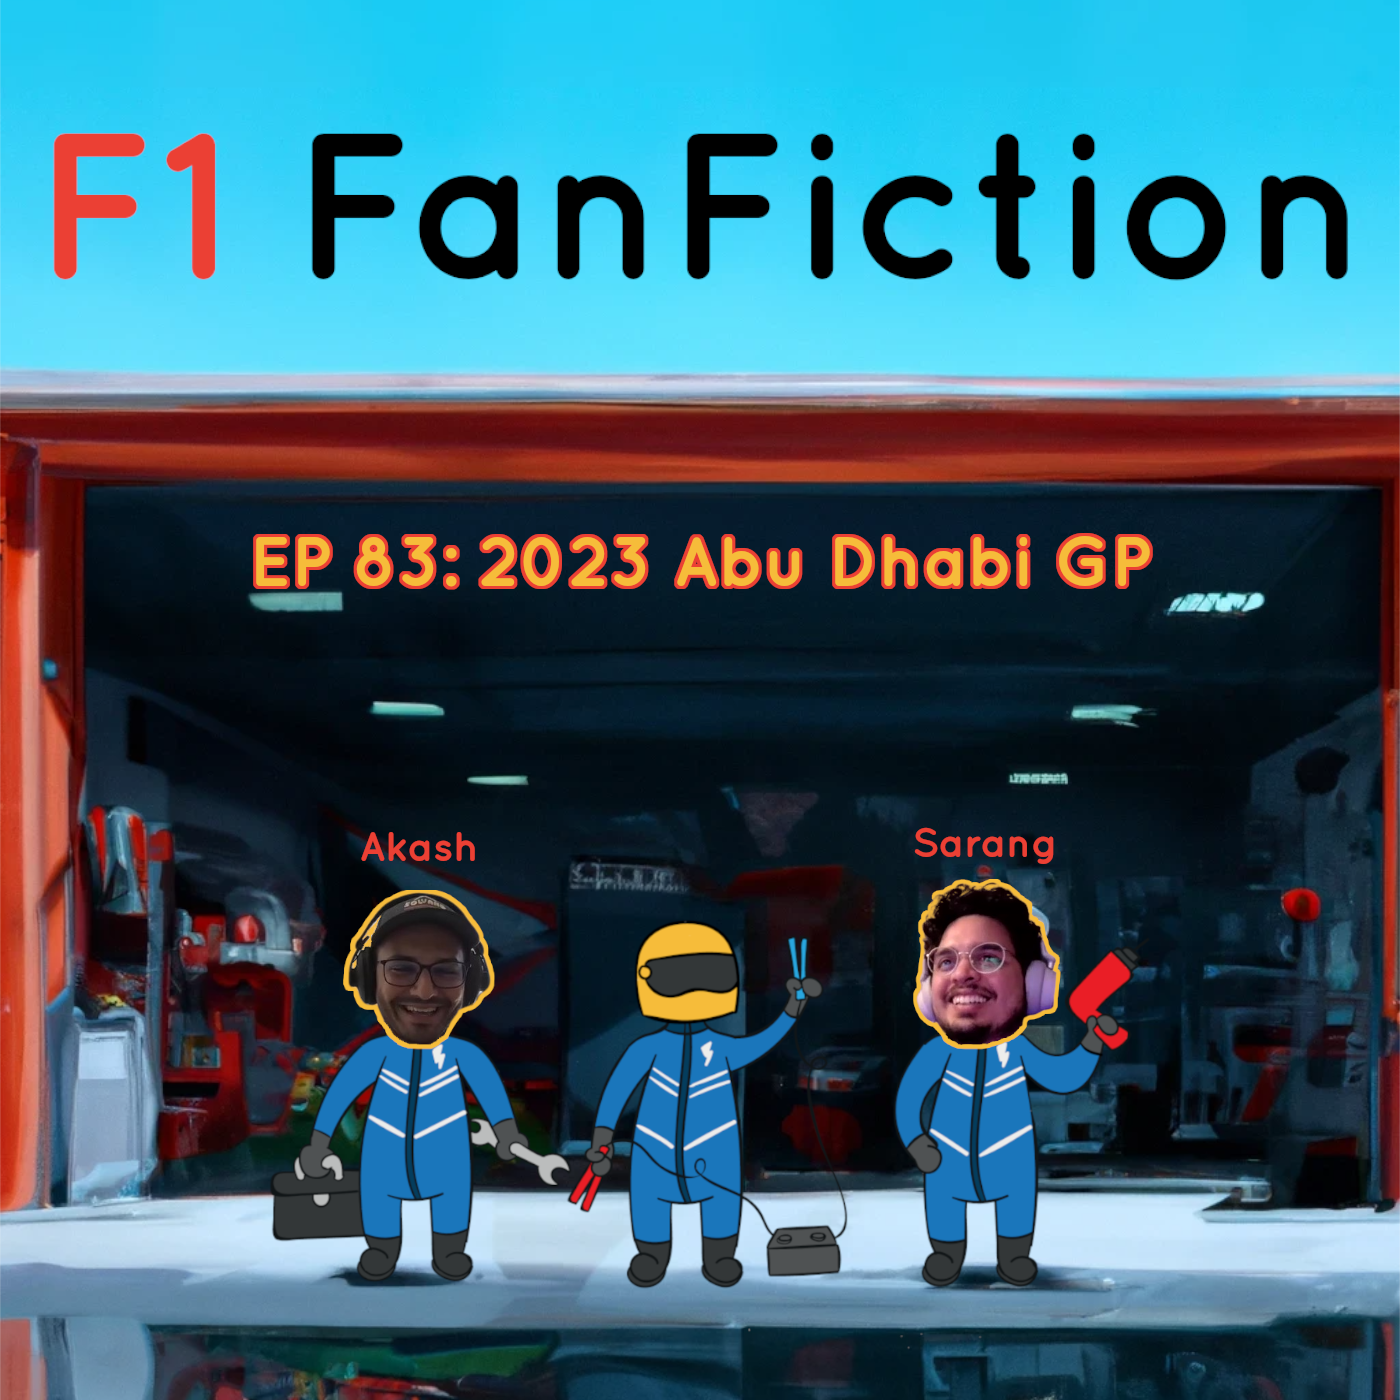 2023 Abu Dhabi GP